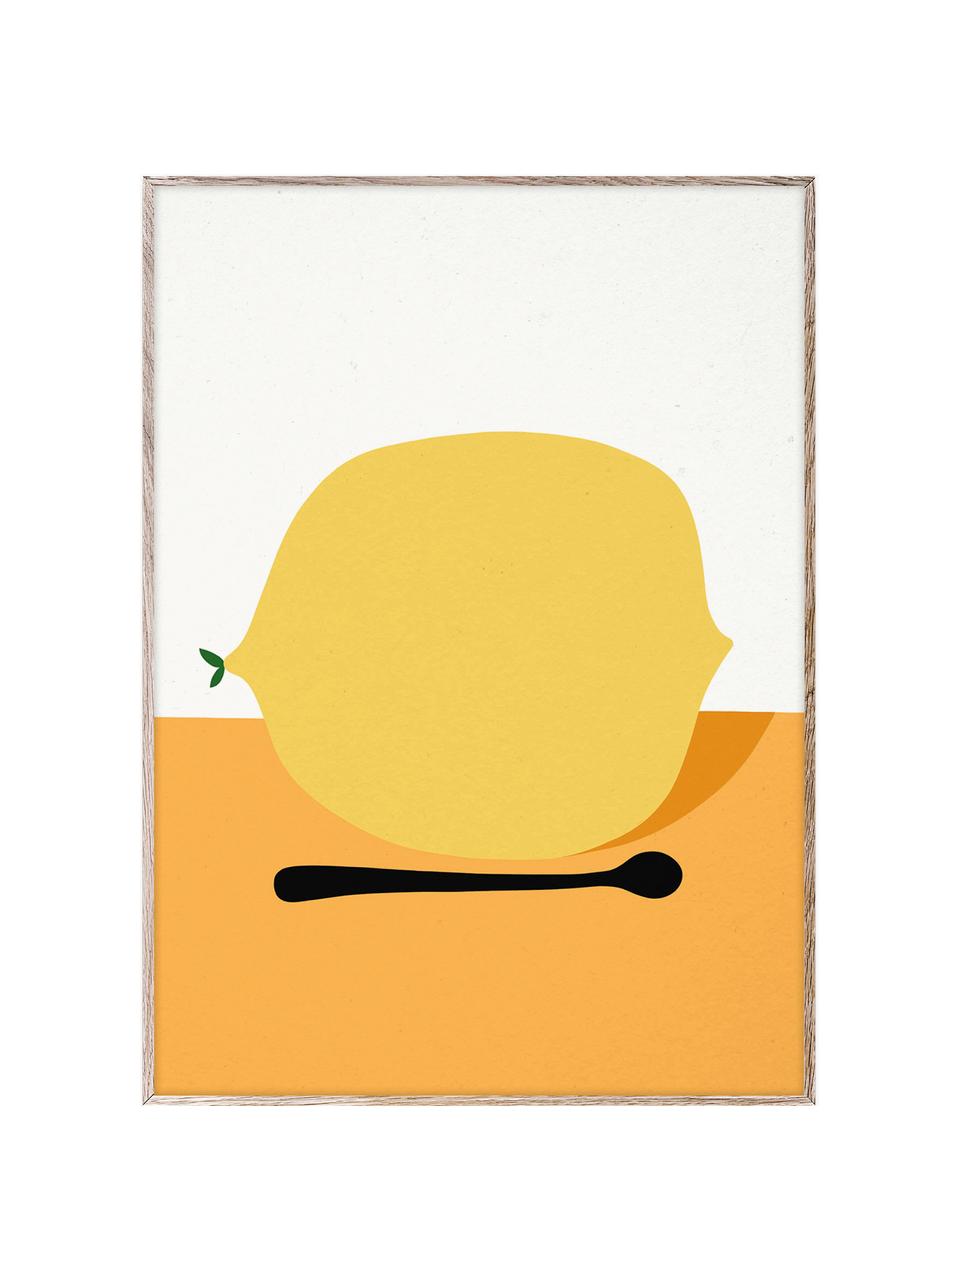 Plakát Citron, 210g matný papír Hahnemühle, digitální tisk s 10 barvami odolnými vůči UV záření, Žlutá, oranžová, tlumeně bílá, Š 30 cm, V 40 cm